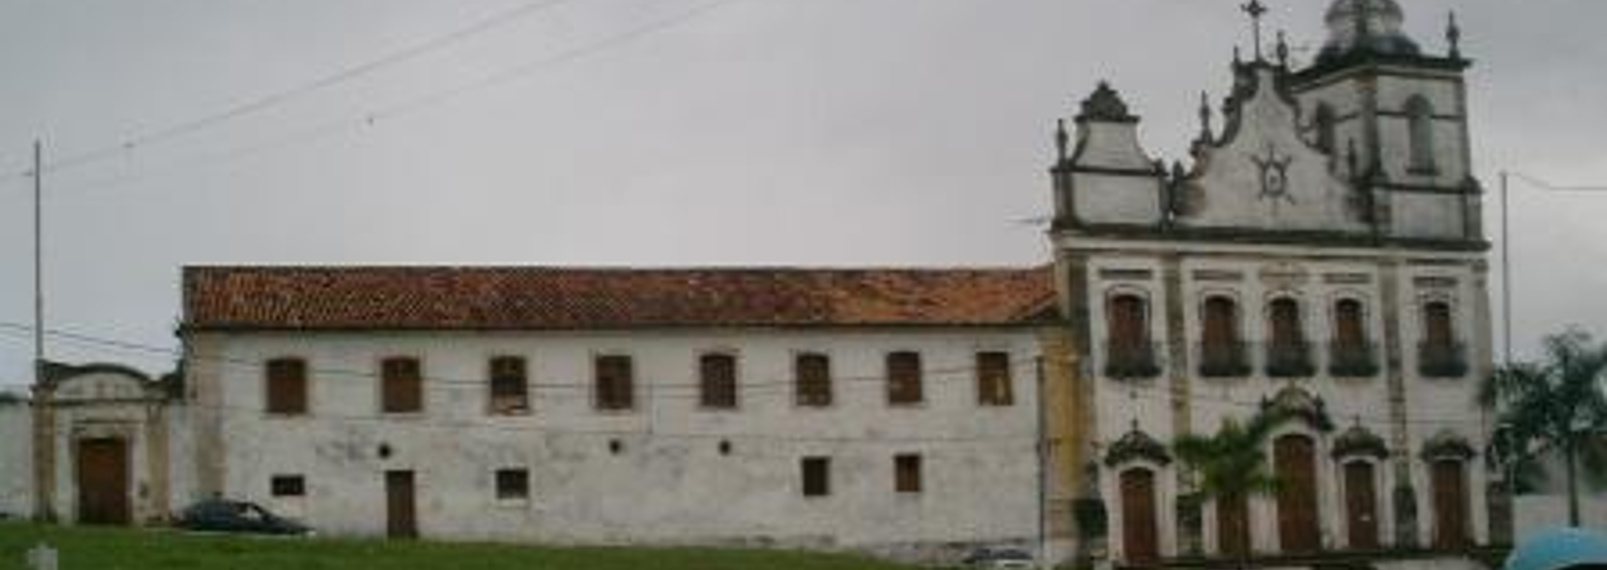 Convento do Sagrado Coração de Jesus - Igarassu  ist einer der ältesten Orte Brasiliens und liegt etwa 50 Km nördlich von Recife